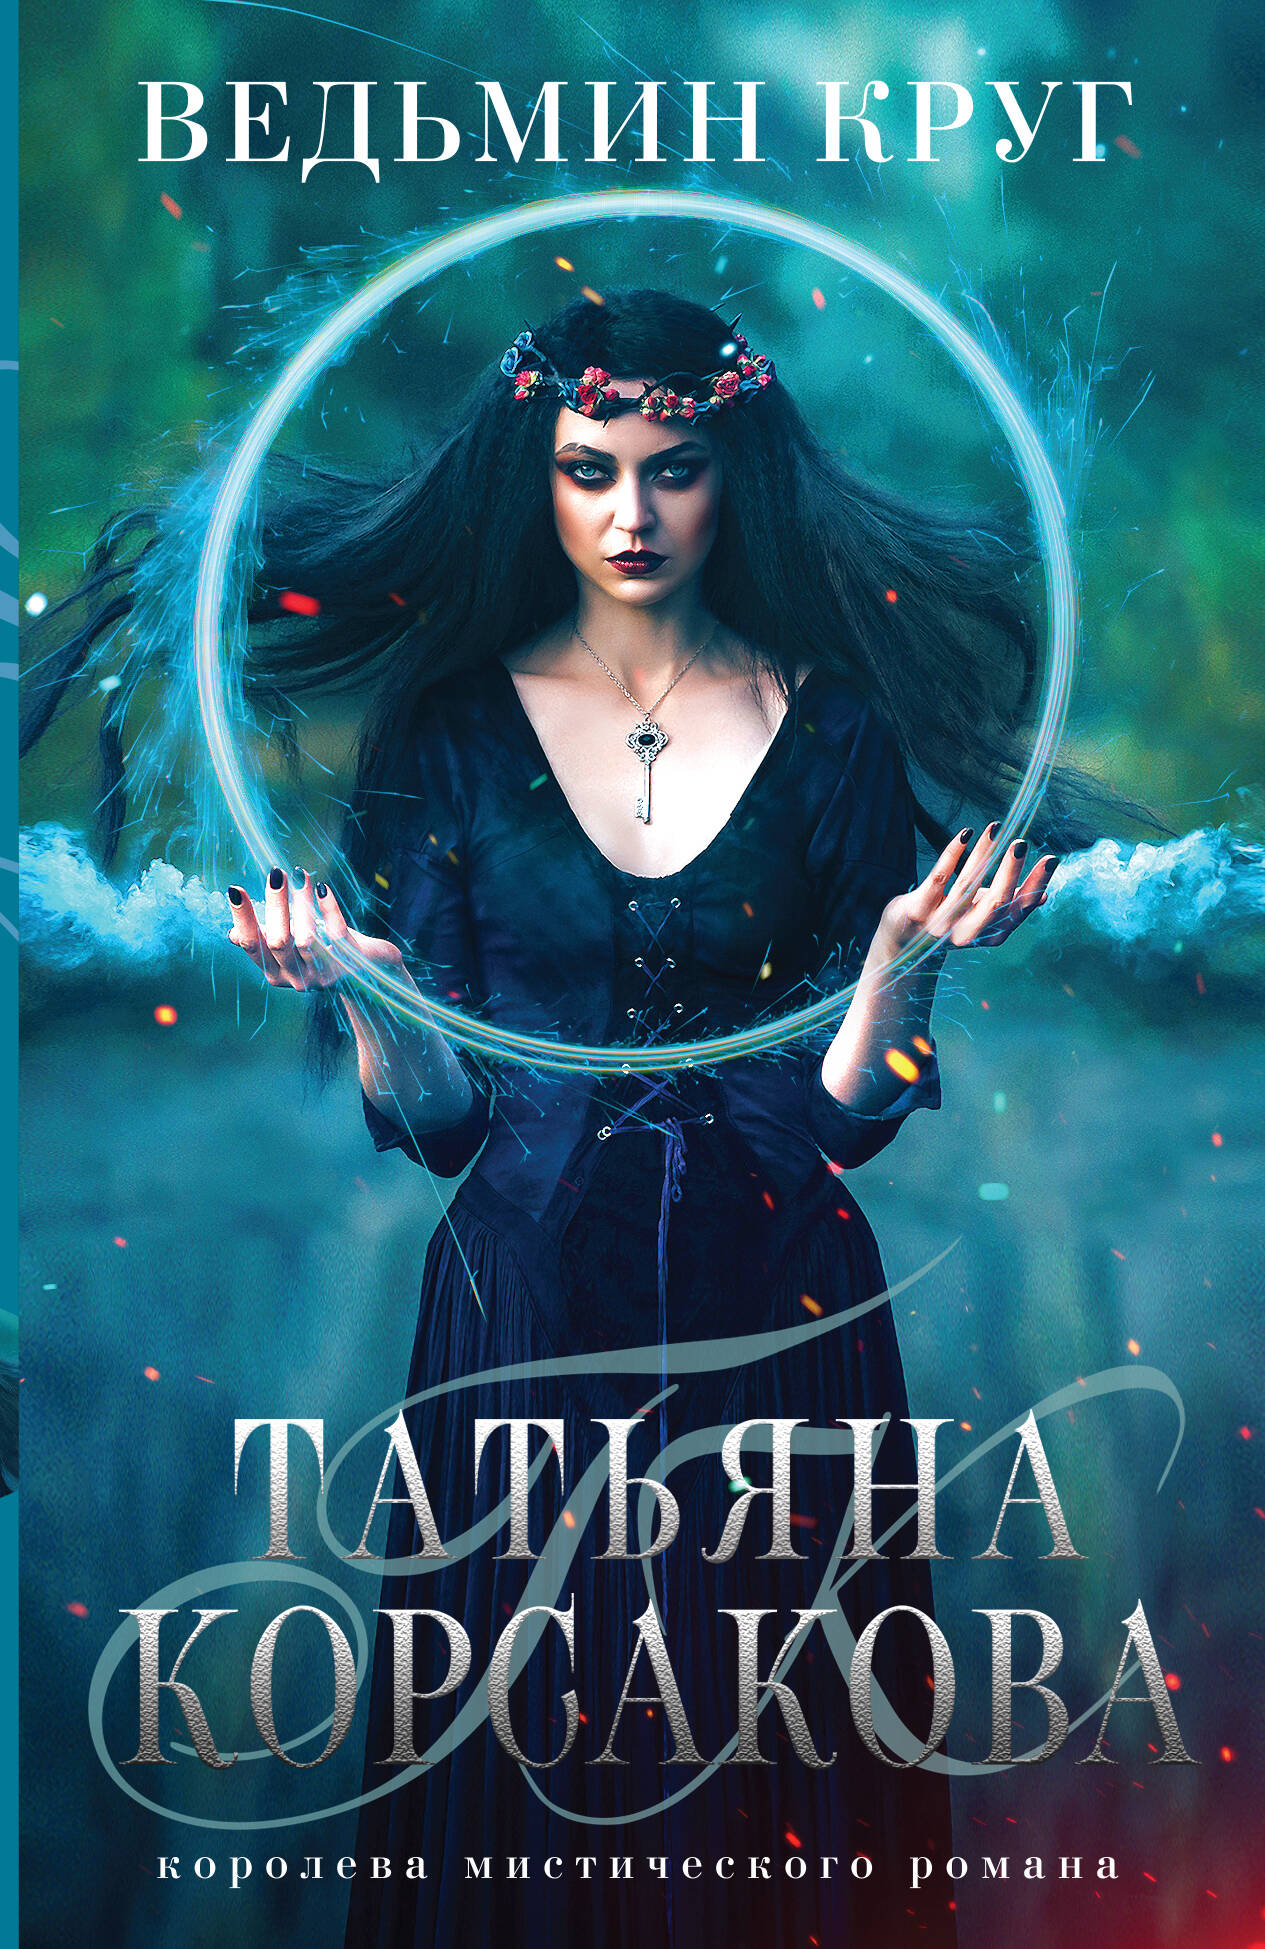 Корсакова Татьяна - Ведьмин круг